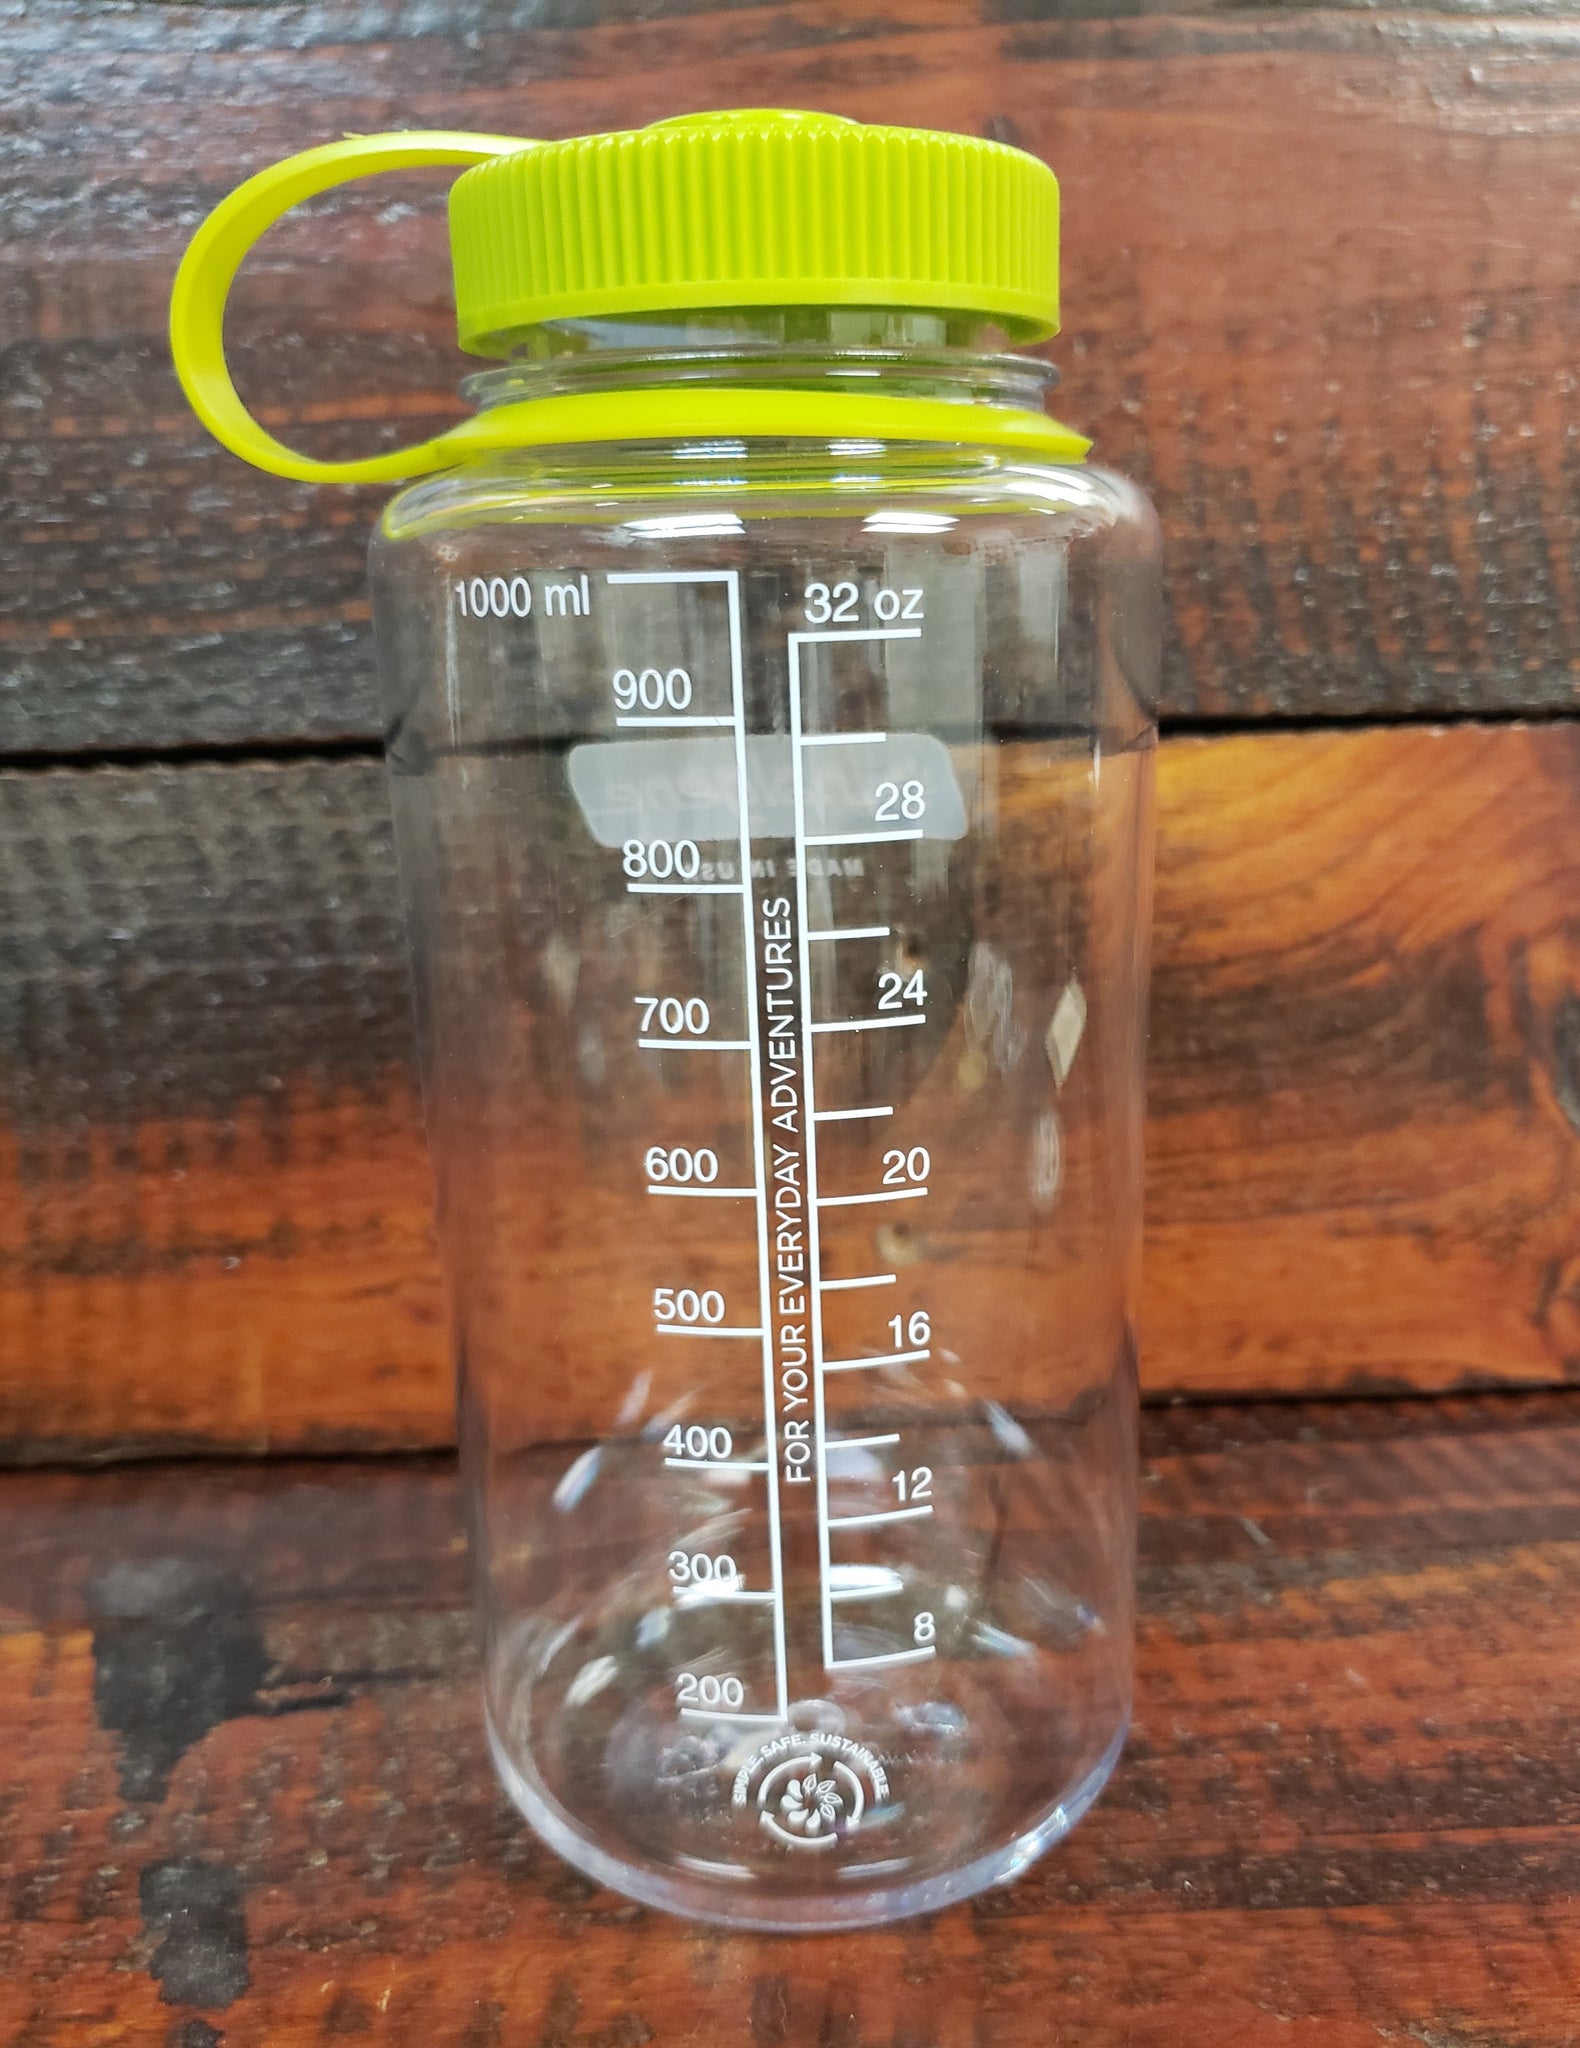 AHG Nalgene 32 oz. Water Bottle - AHGstore